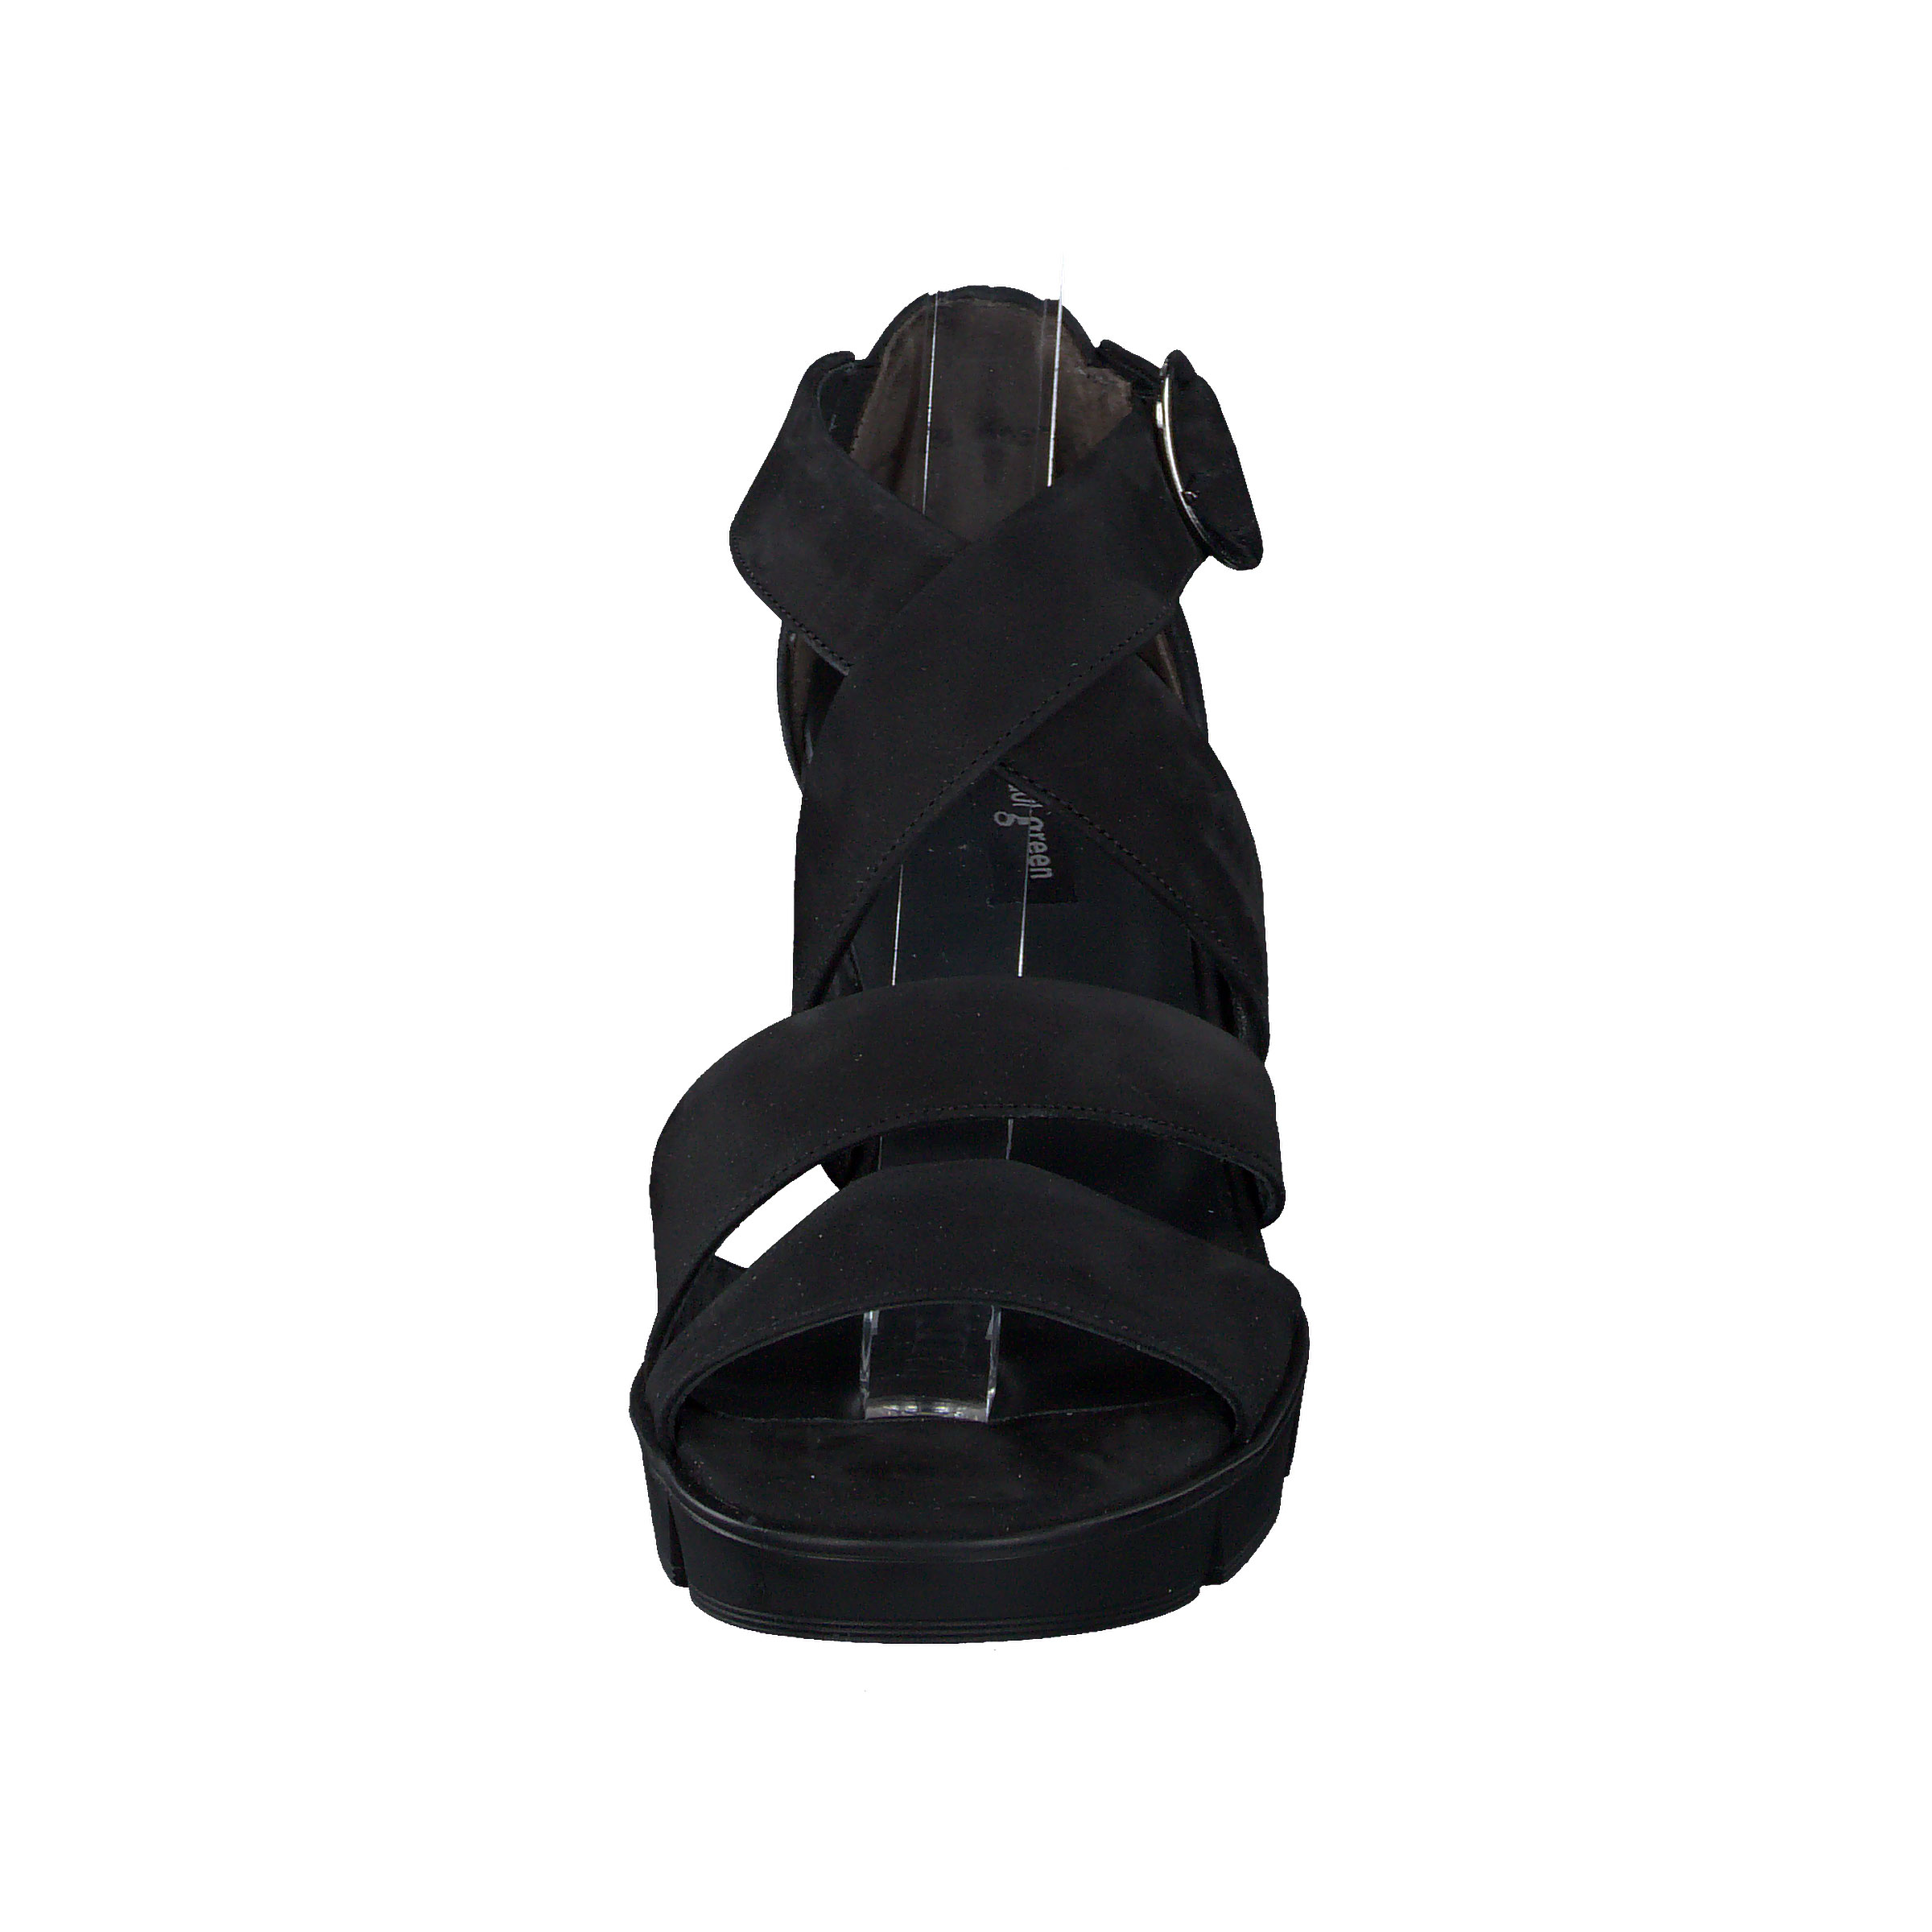 Sandalette - Black Nubuck leather